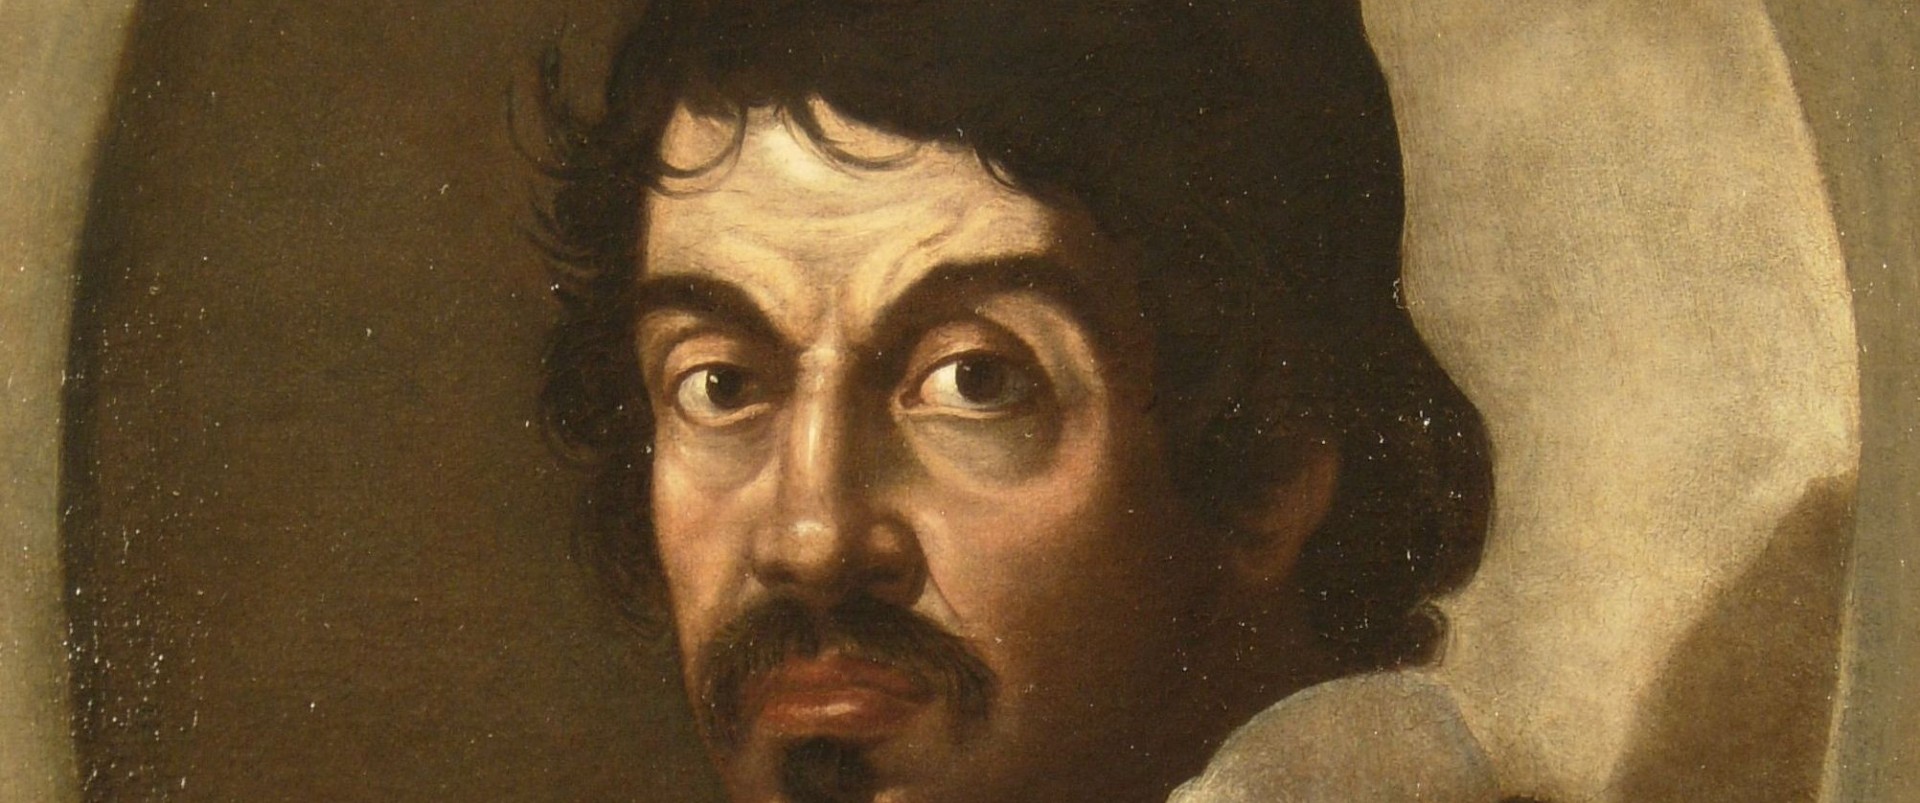 65a83a3f9511b Caravaggio: Quem Foi O Artista, Obras E Características